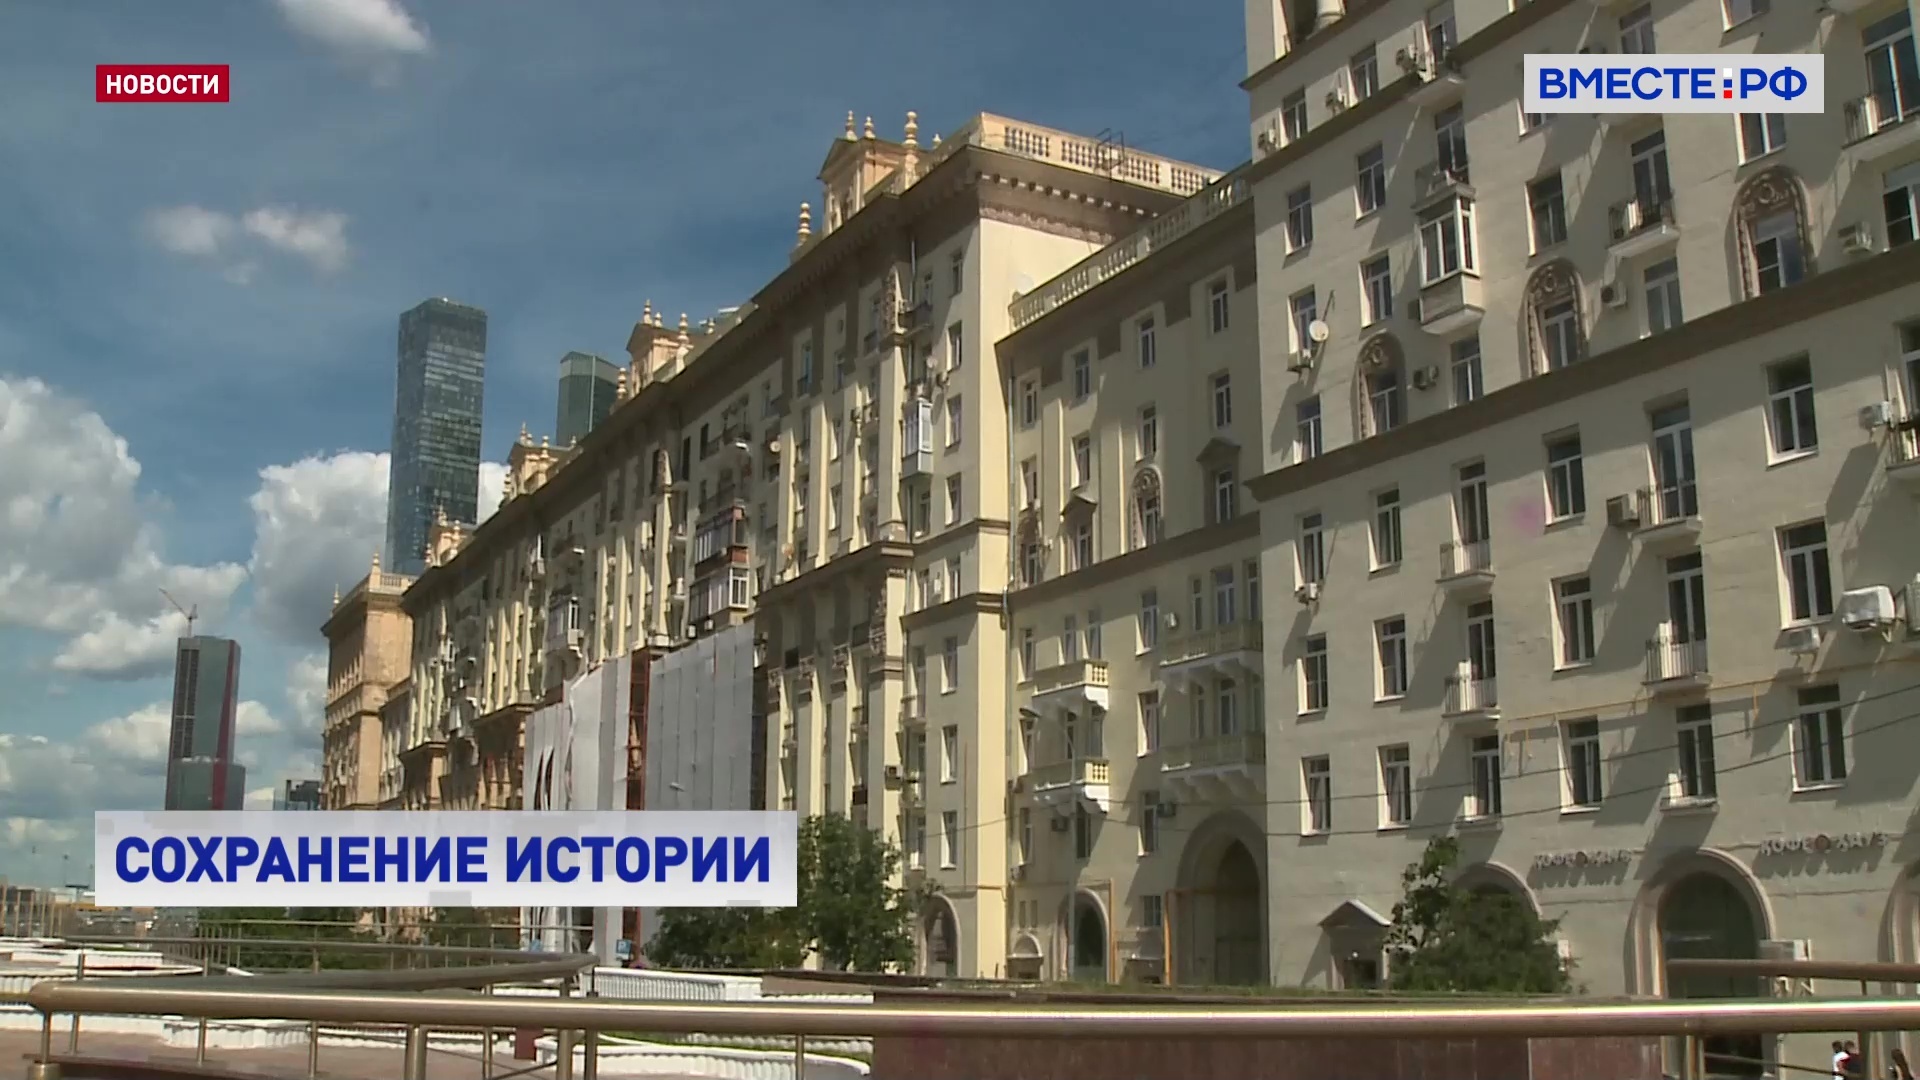 РЕПОРТАЖ: Реставрация дома - визитной карточки Москвы 